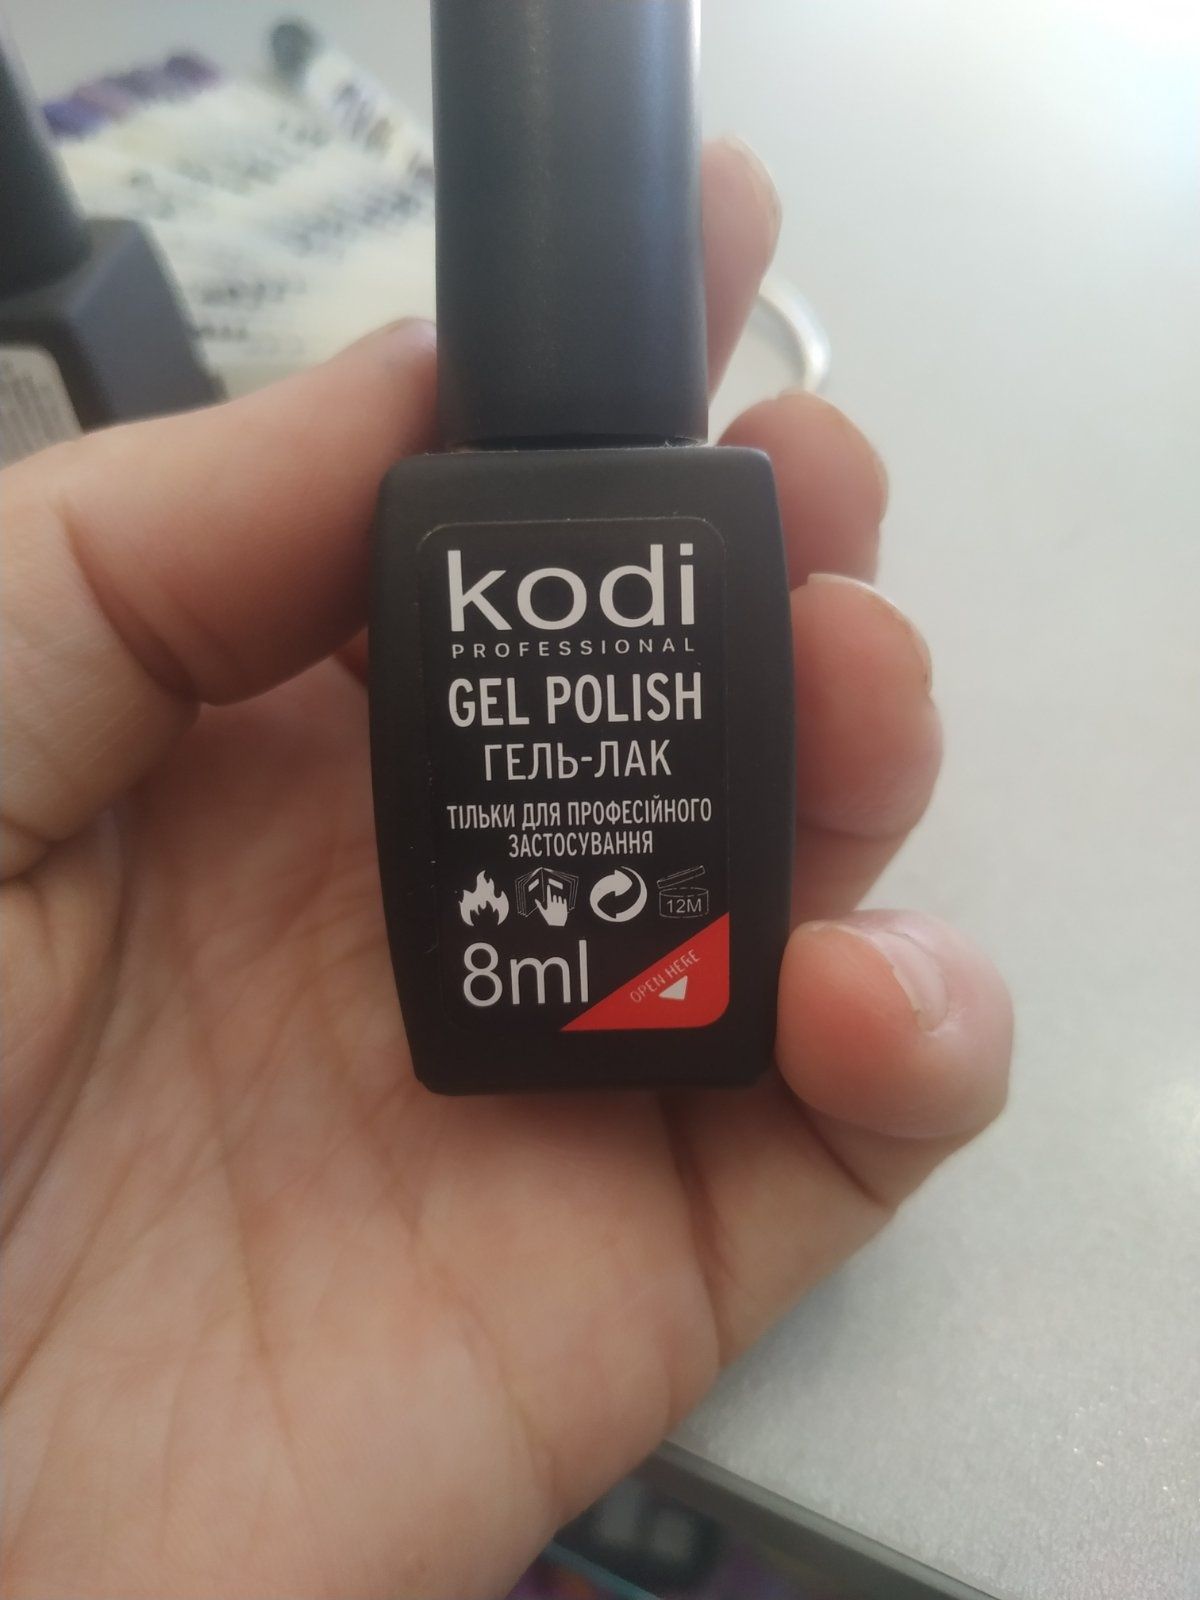 Гель лак Kodi 8 мл. (Оригінал)
Ціна 65 грн/шт.
(Кольори тільки з цієї